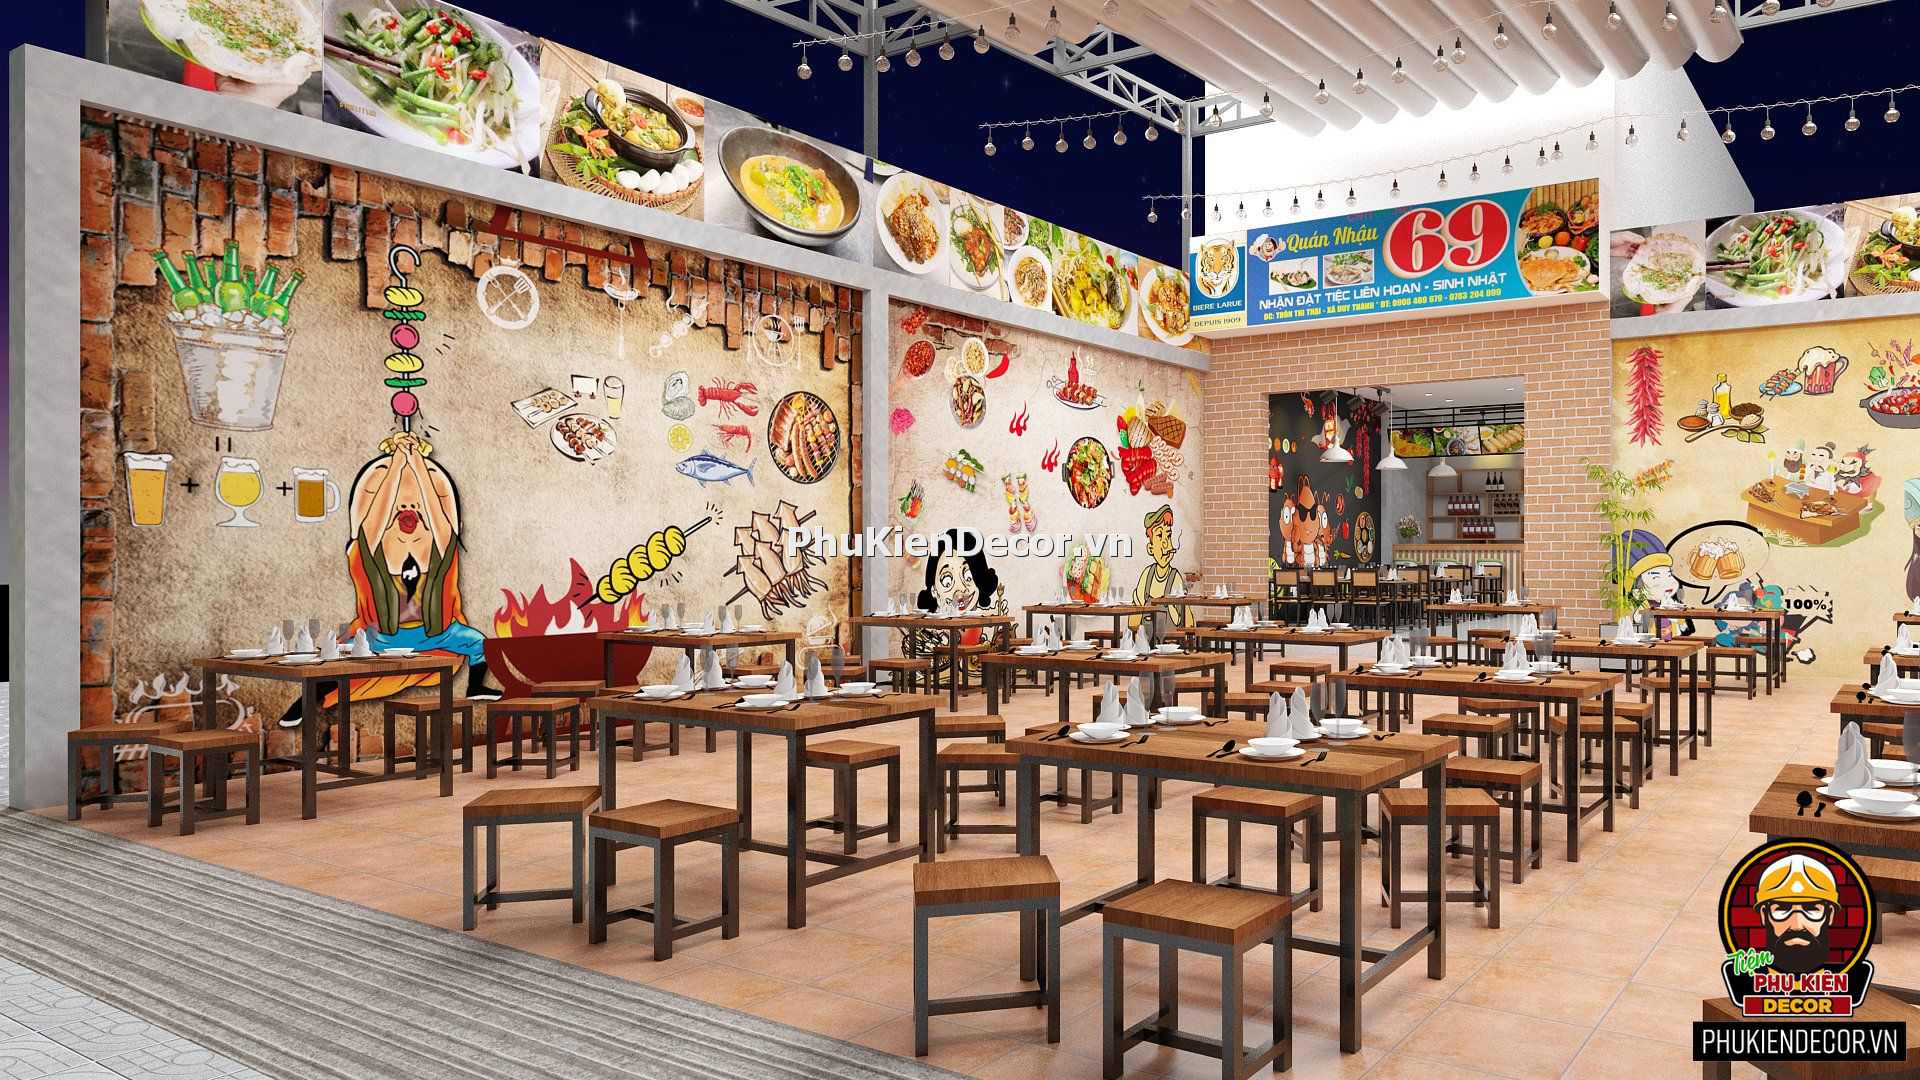 Bạn sẽ cảm thấy trở về với quá khứ thần tiên khi xem hình ảnh thiết kế nhà hàng đồng quê Yên Bình năm